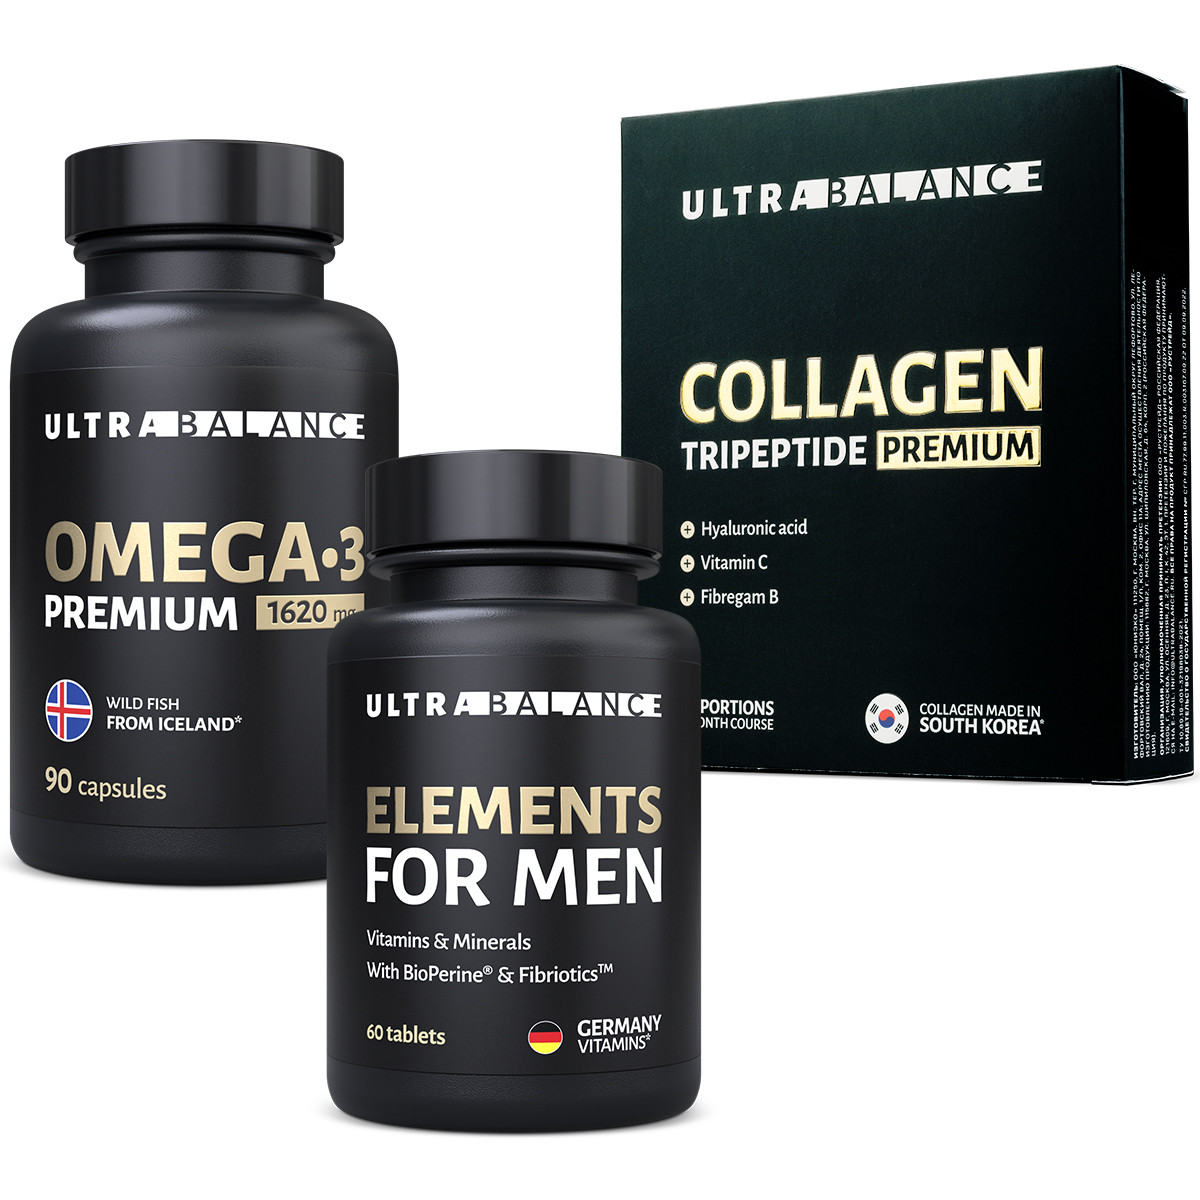 Спортивный комплекс для мужчин UltraBalance премиум набор Омега 3 мультивитамины и коллаген 30 саше - фото 1